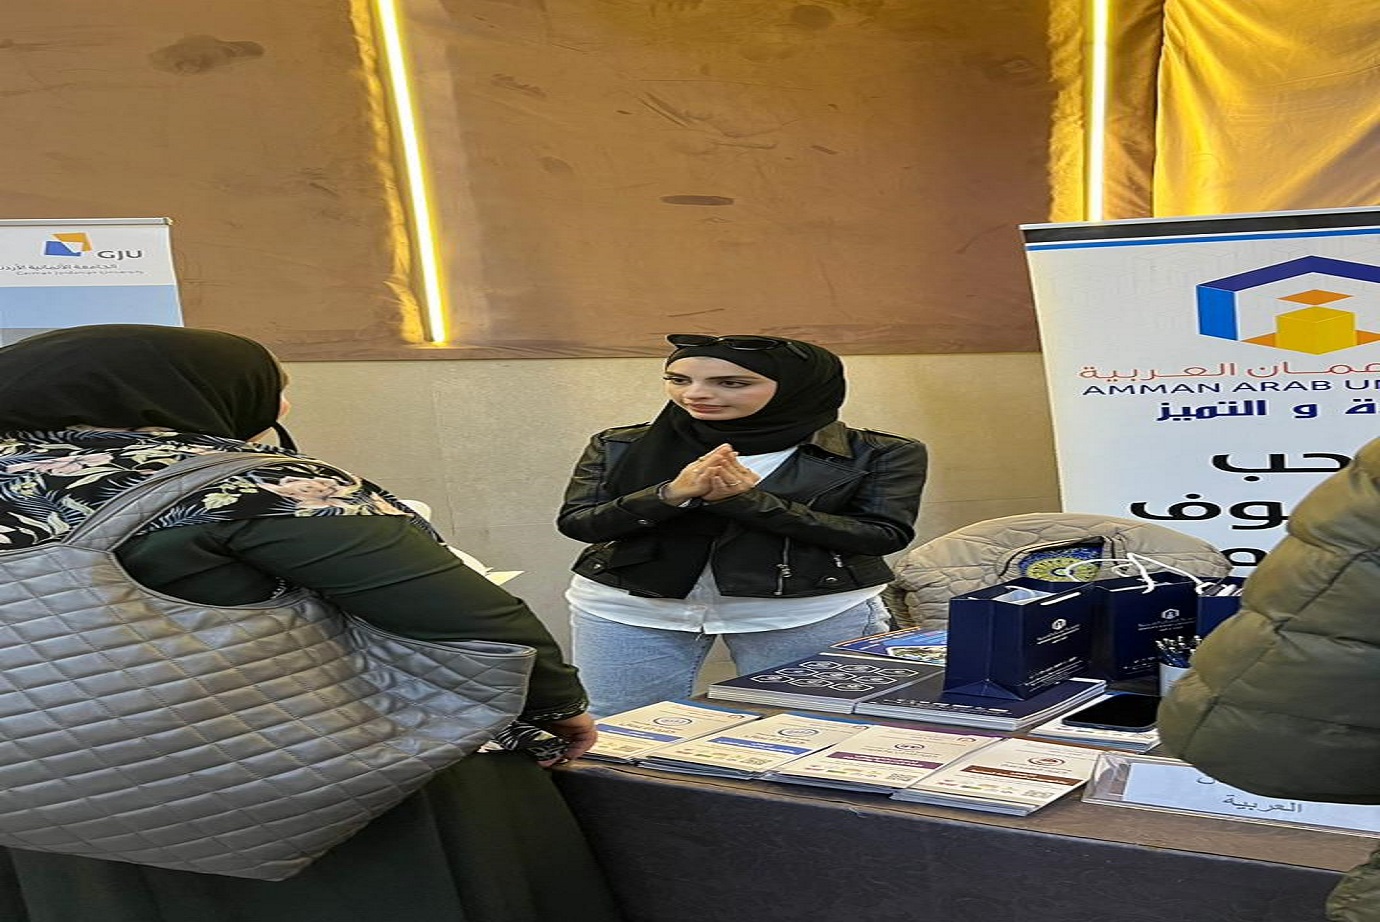 "عمان العربية" تشارك في معرض الإرشاد الجامعي في المدرسة الرقمية الأمريكية7